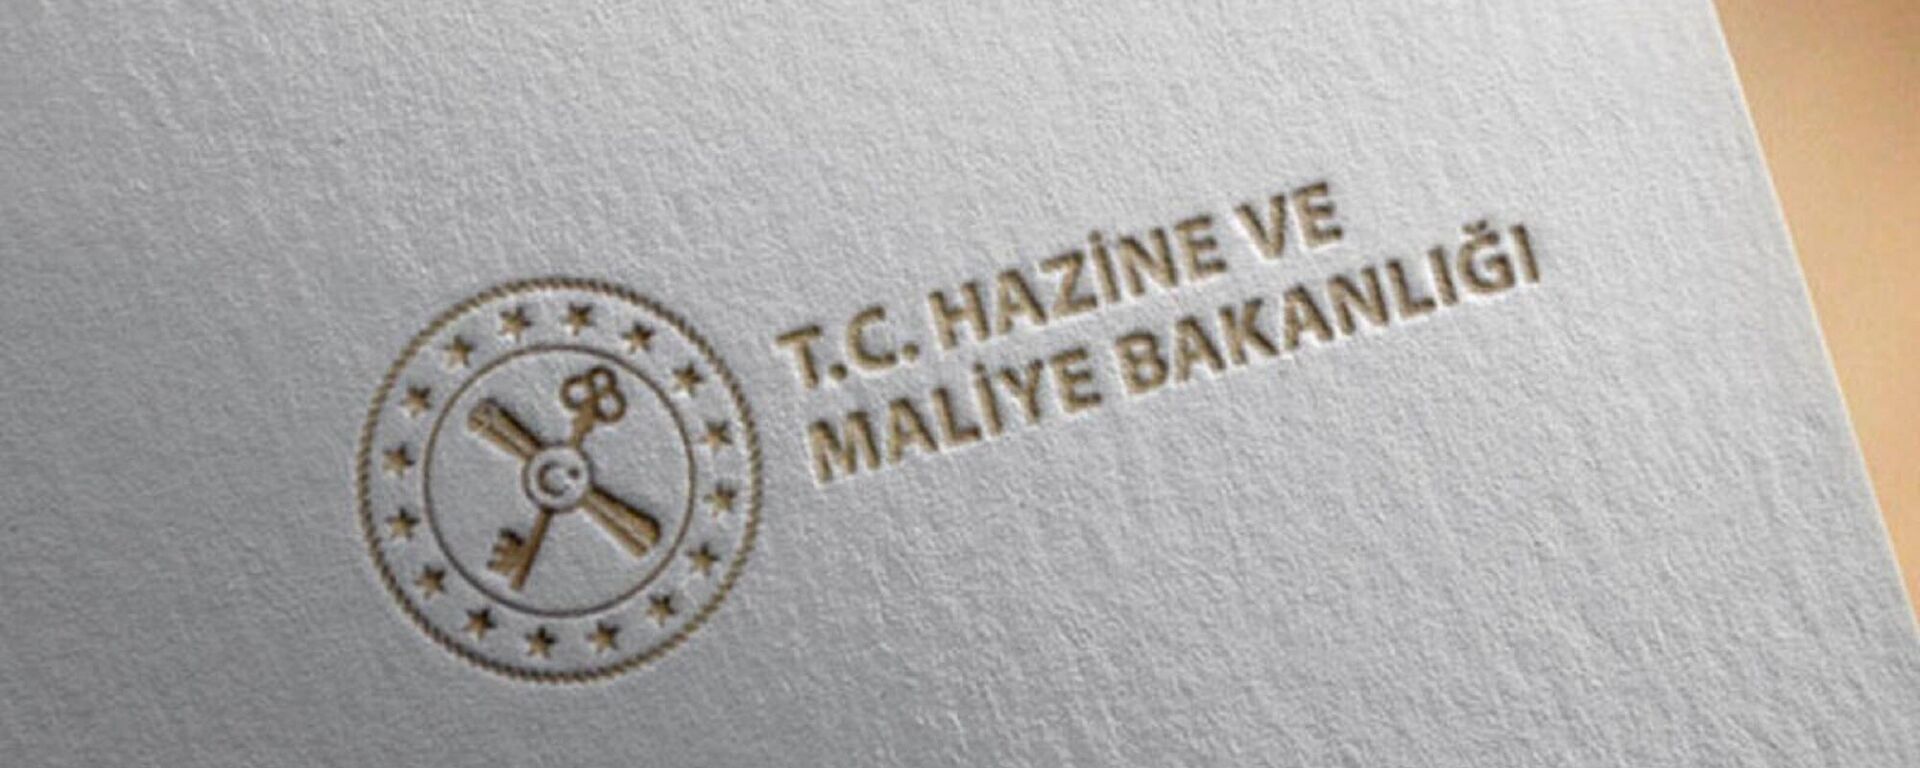 Hazine ve Maliye Bakanlığı  - Sputnik Türkiye, 1920, 25.10.2022